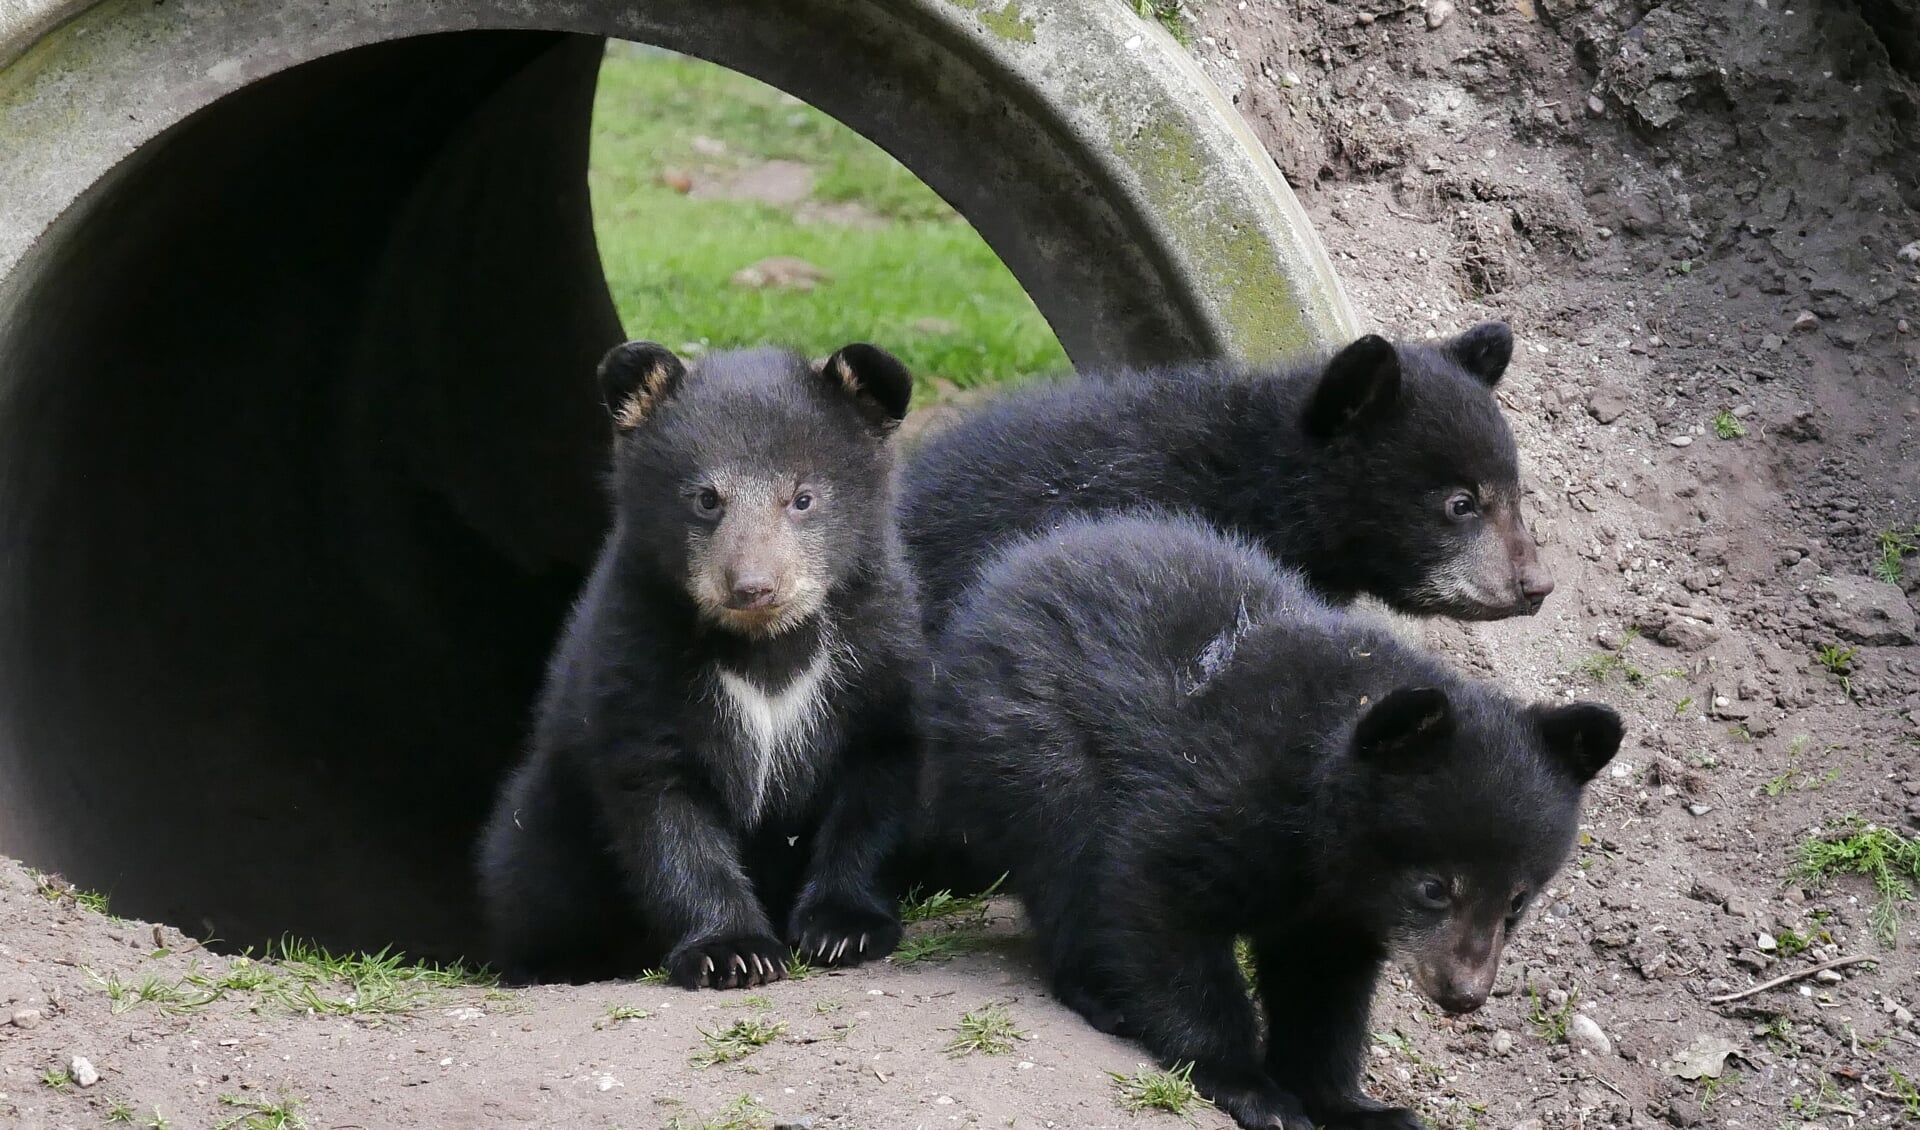 Dierenpark Zie-ZOO is momenteel het enige dierenpark in Nederland met Amerikaanse zwarte beren.